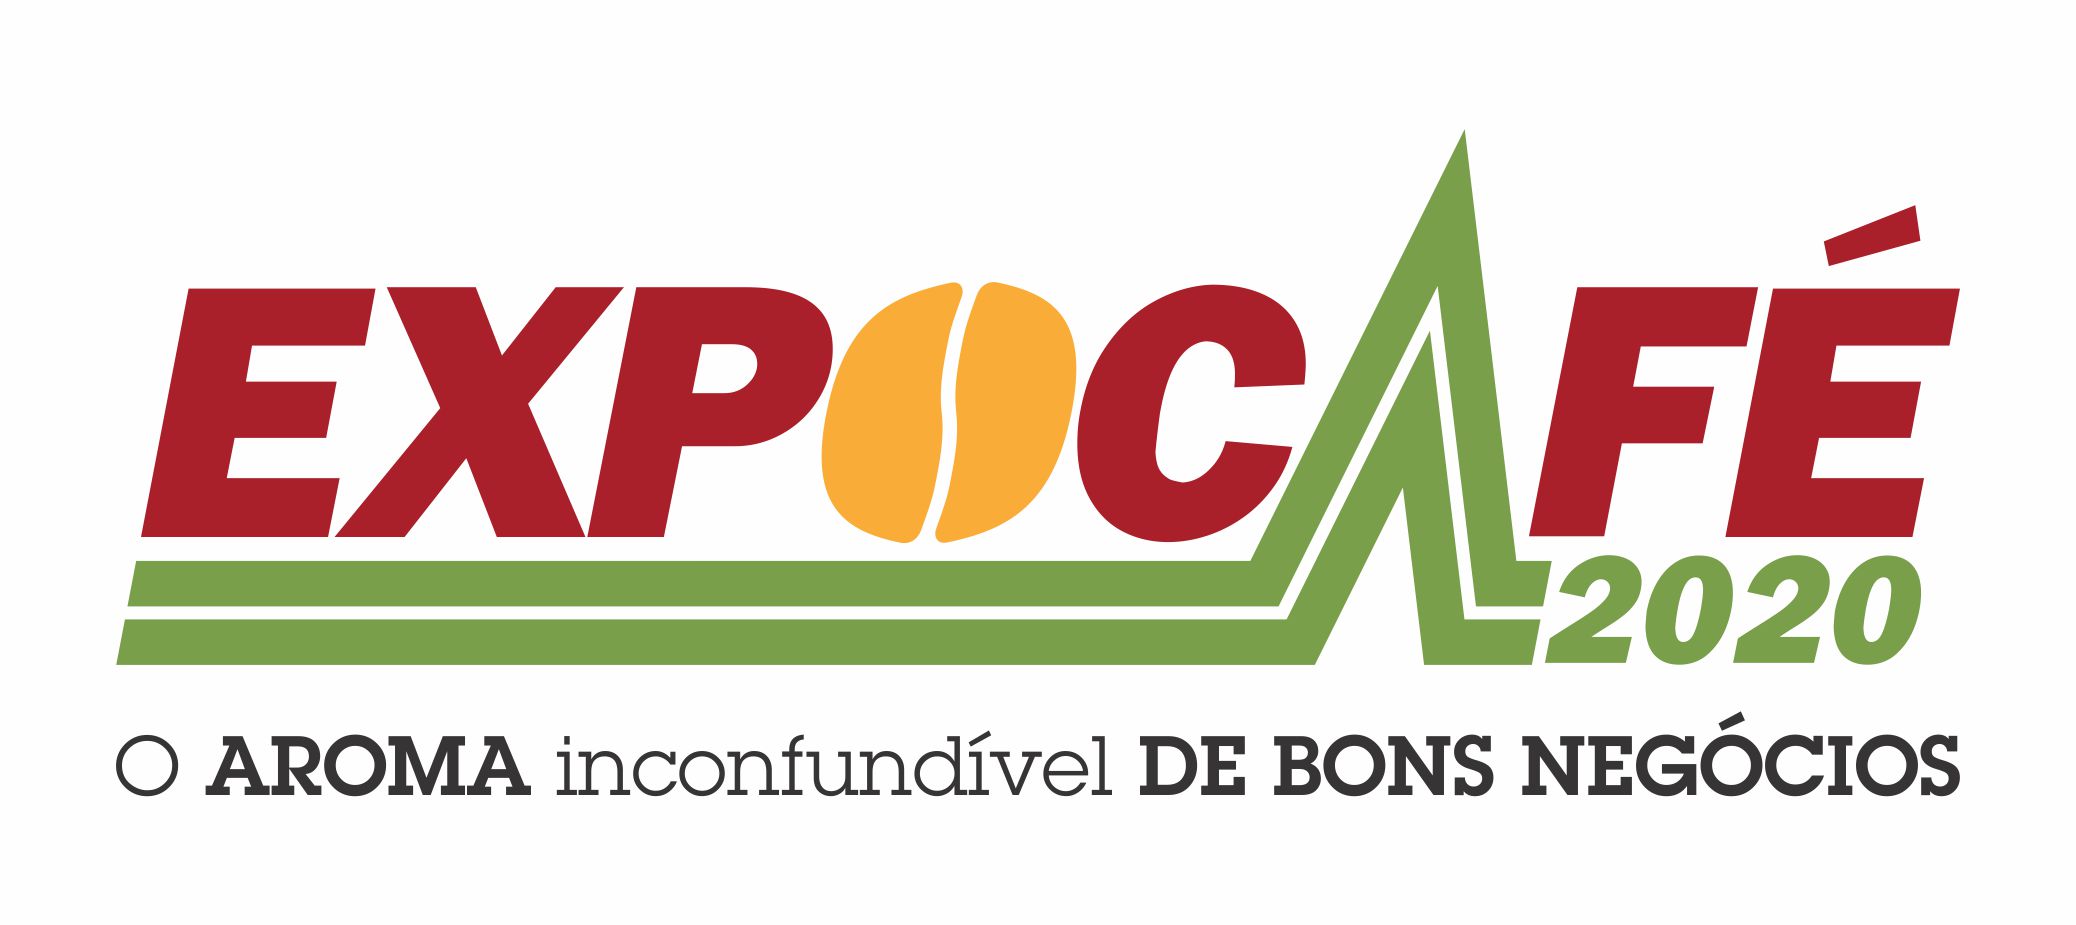 logo_expocafe_2020_slogan